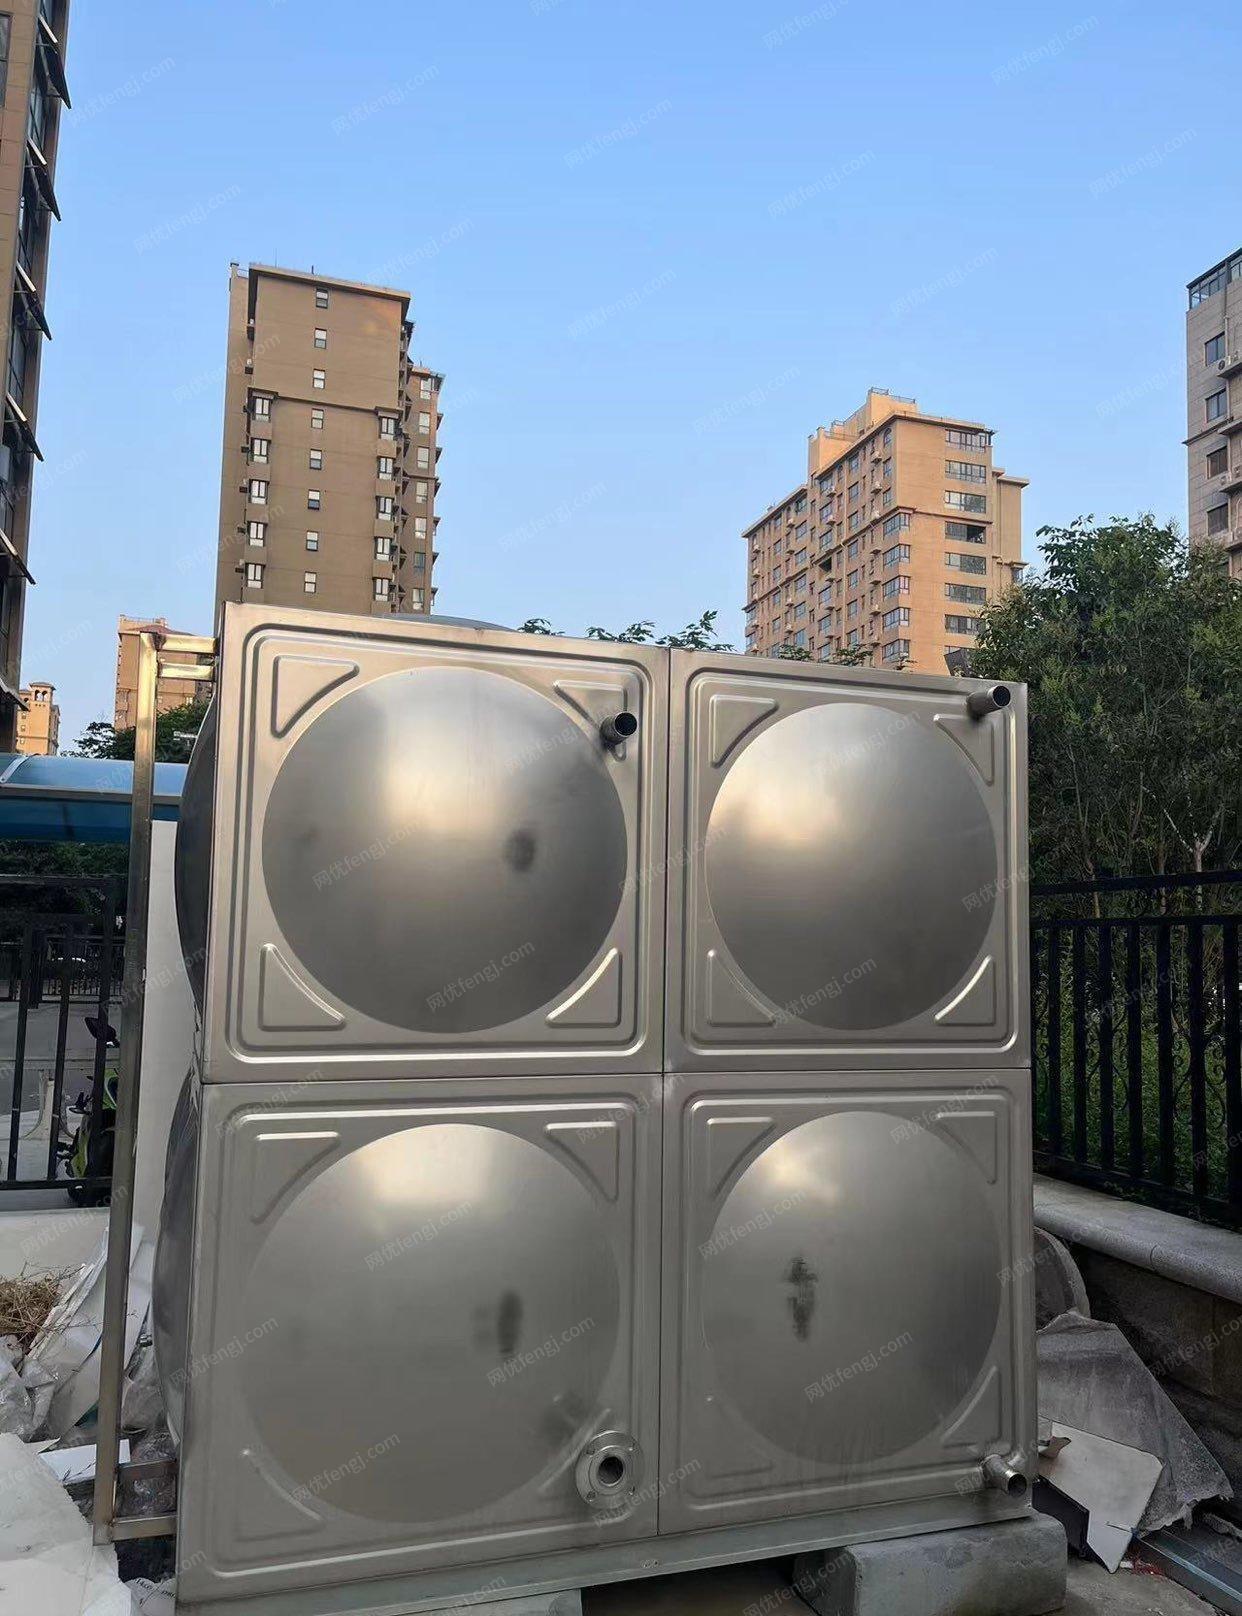 河南鹤壁不锈钢水箱10吨低价出售